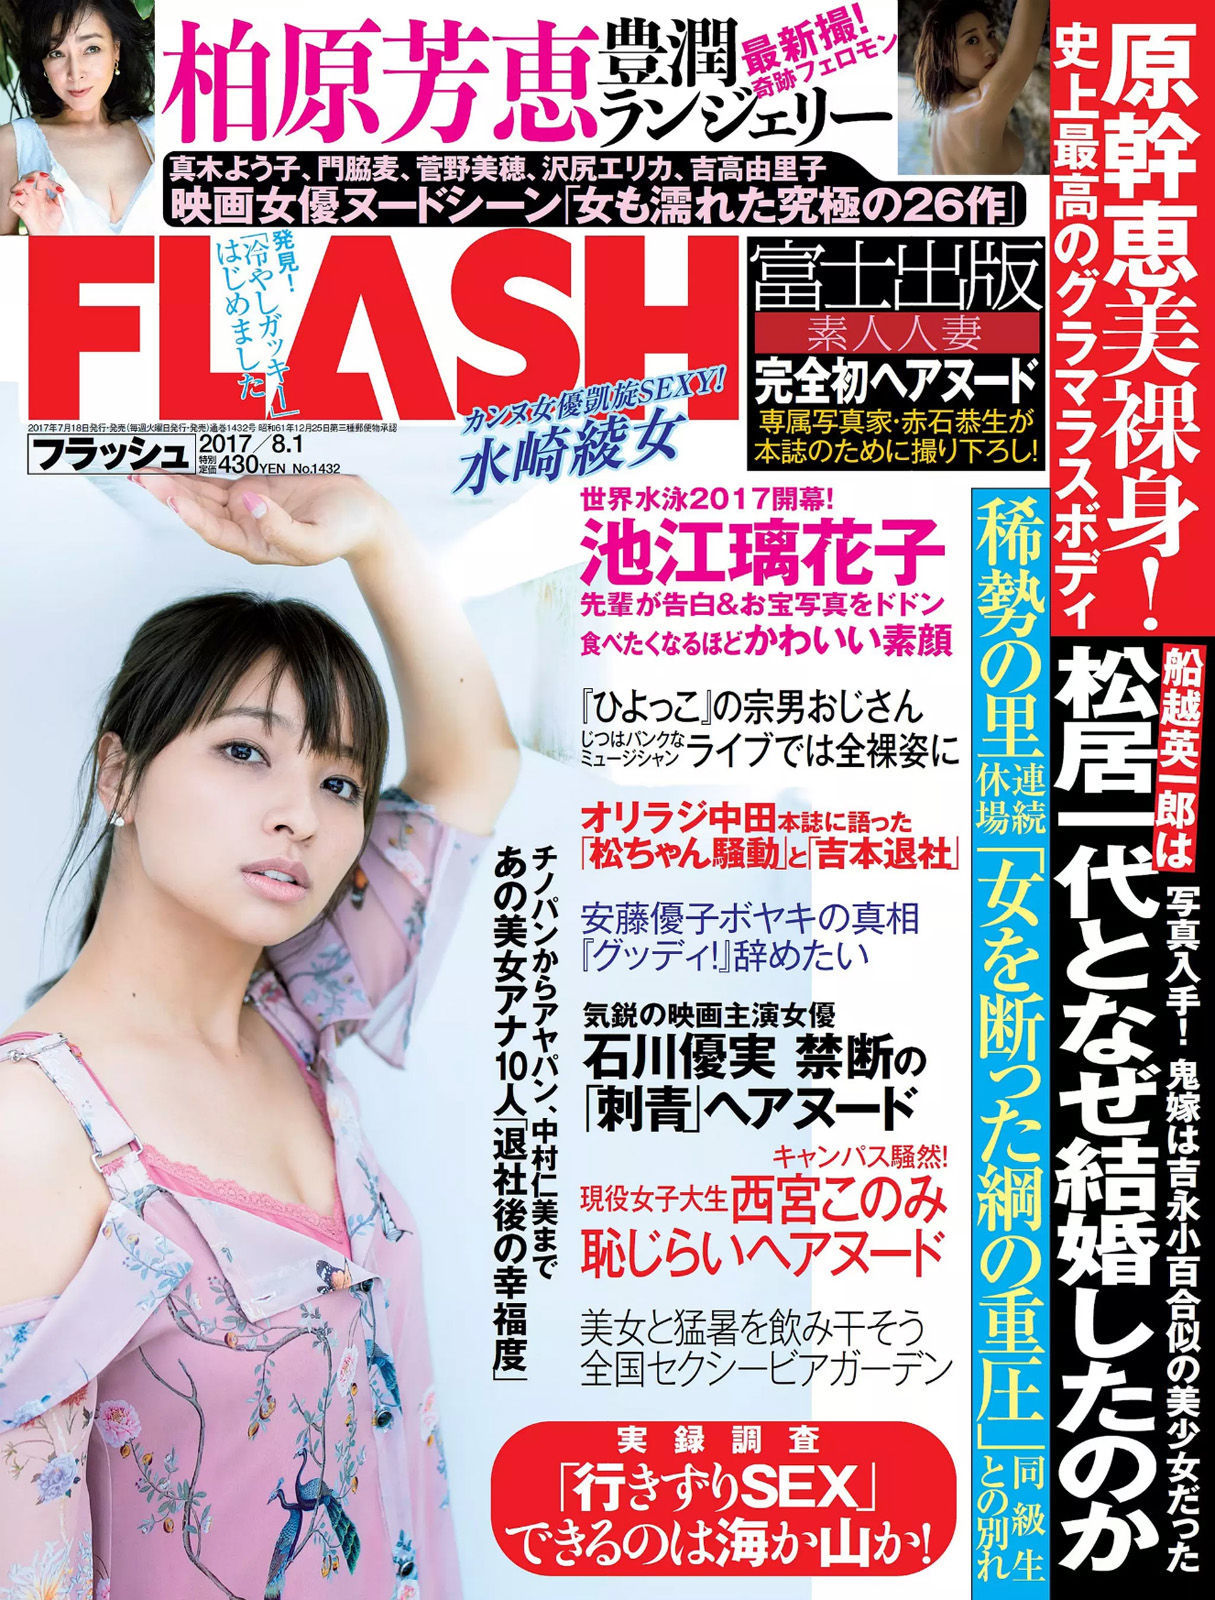 [FLASH]杂志:水崎绫女高品质写真大图收藏合集(12P)